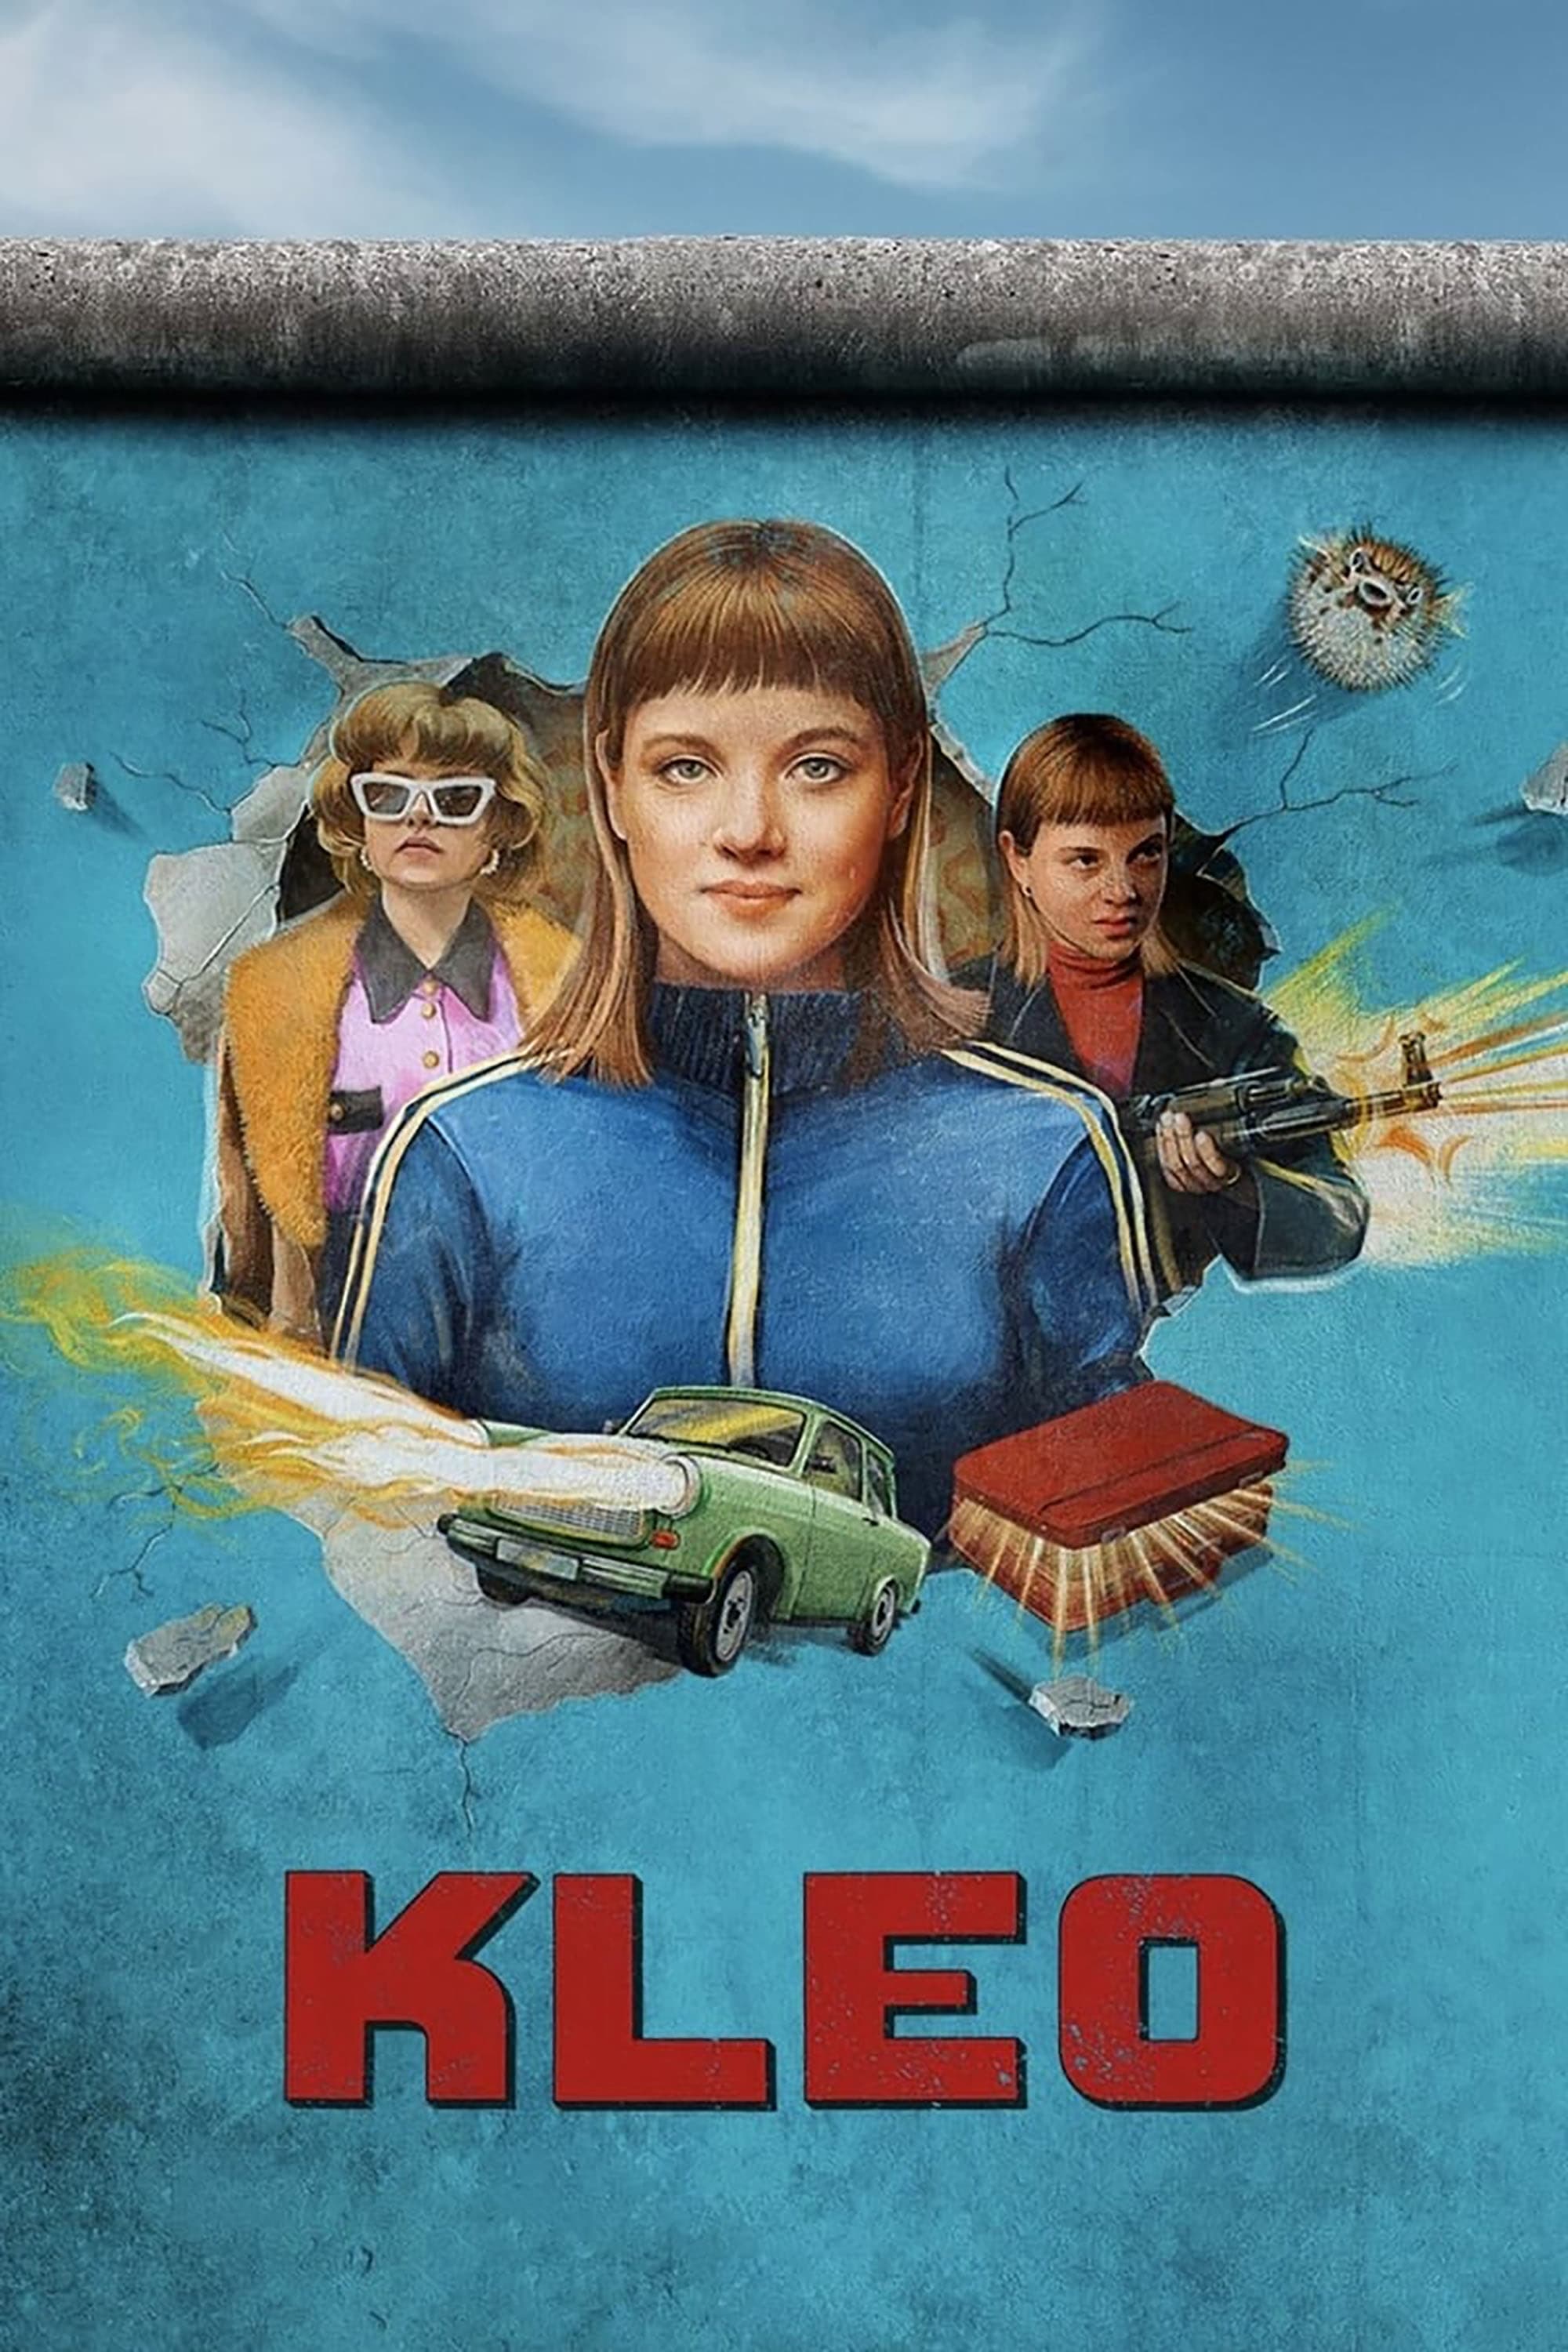 Kleo TV Shows About Spy